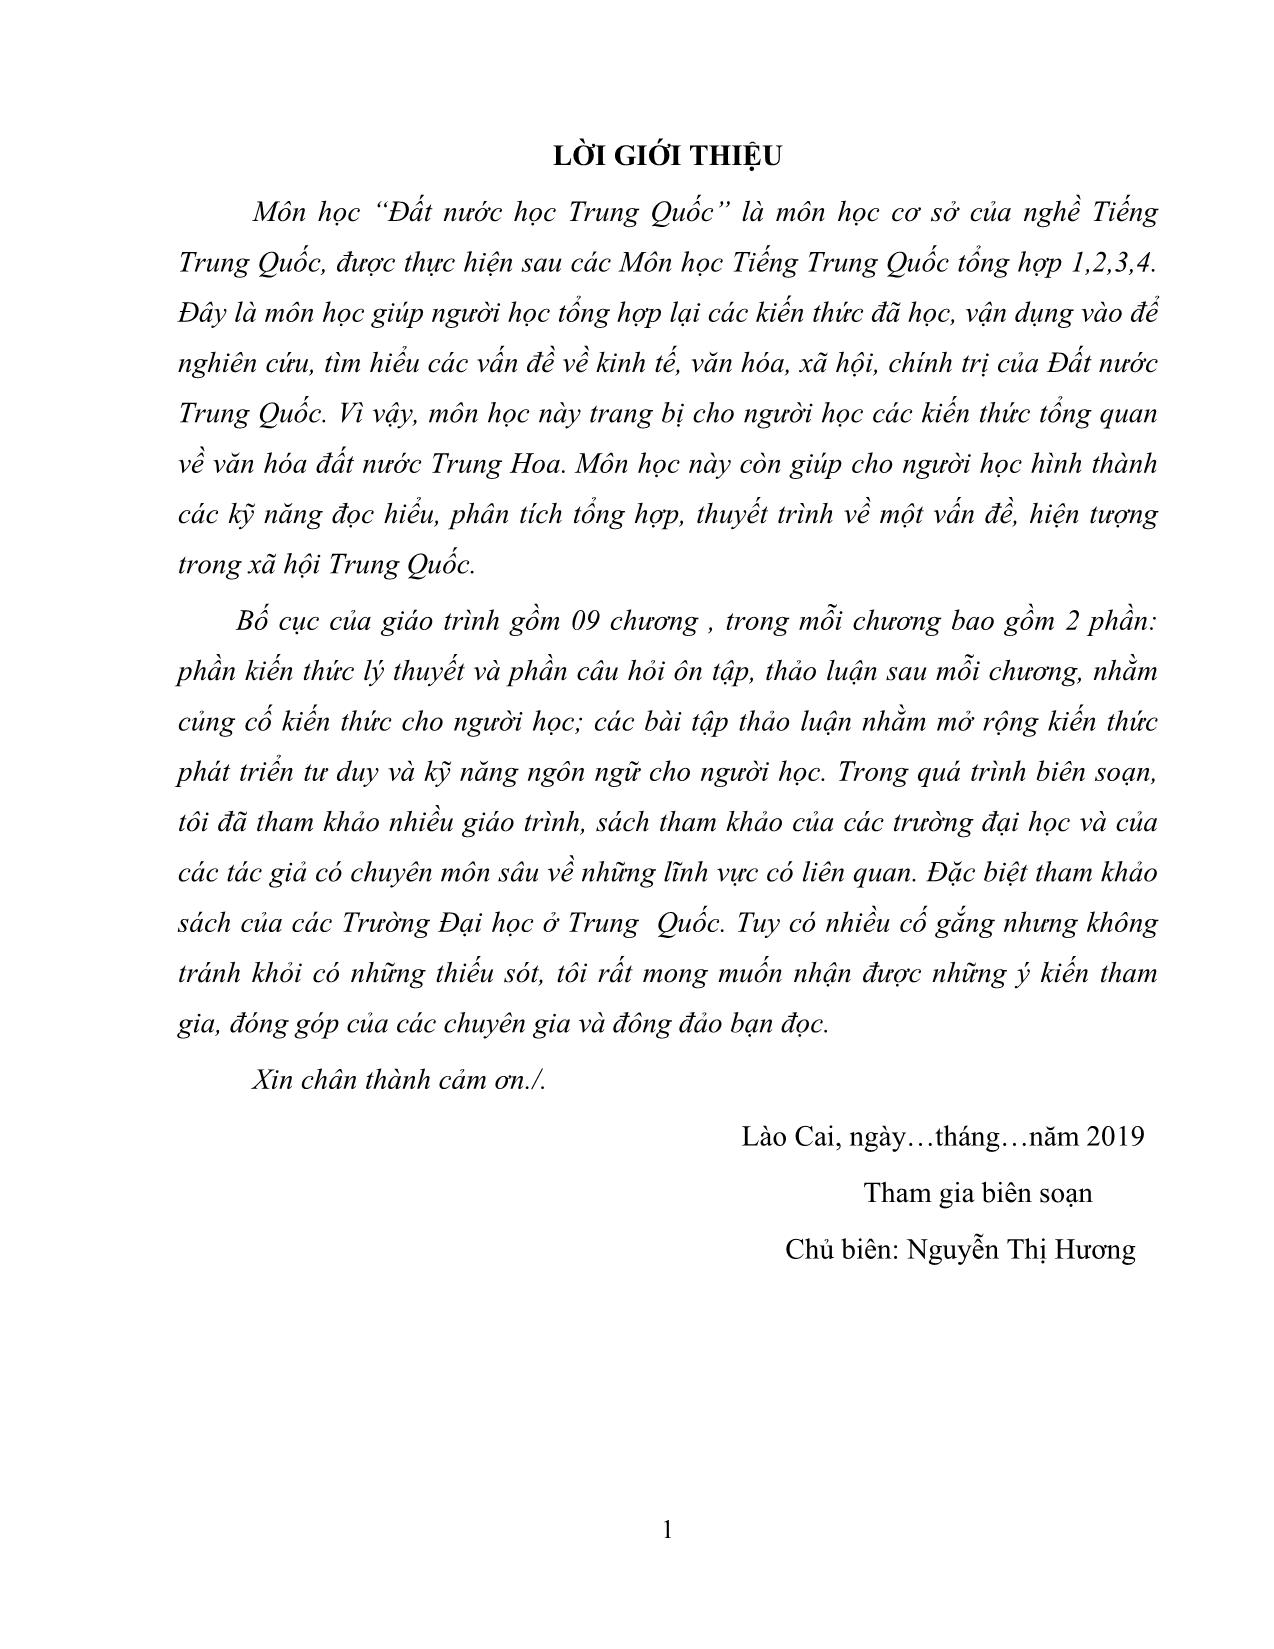 Giáo trình Đất nước học Trung Quốc trang 3